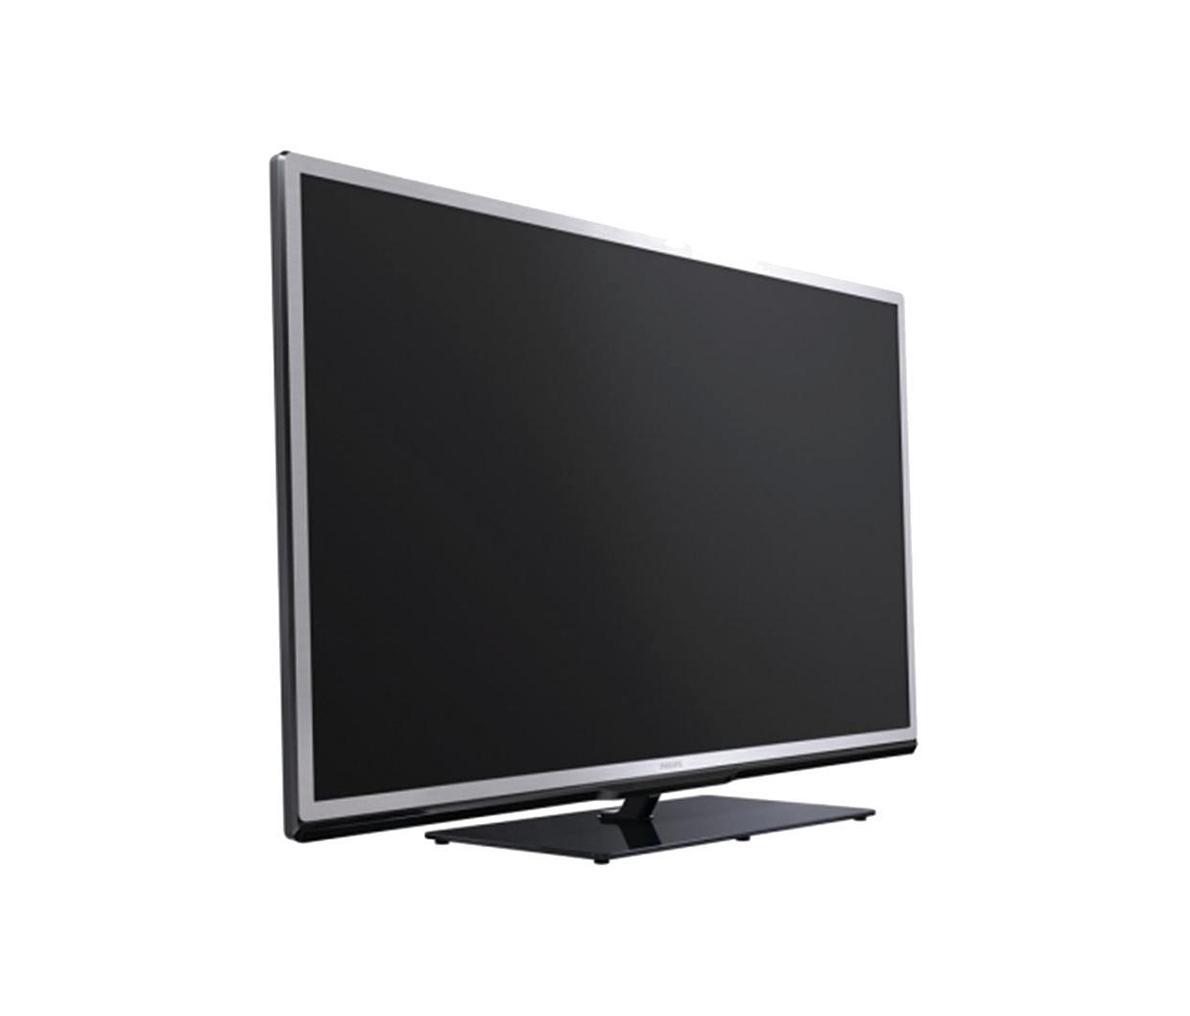 Телевизор серый 32. Philips 32pfl4508t/60. Philips 32pfl7605. Телевизоры Hi 32 серый. Телевизор Филипс серый.